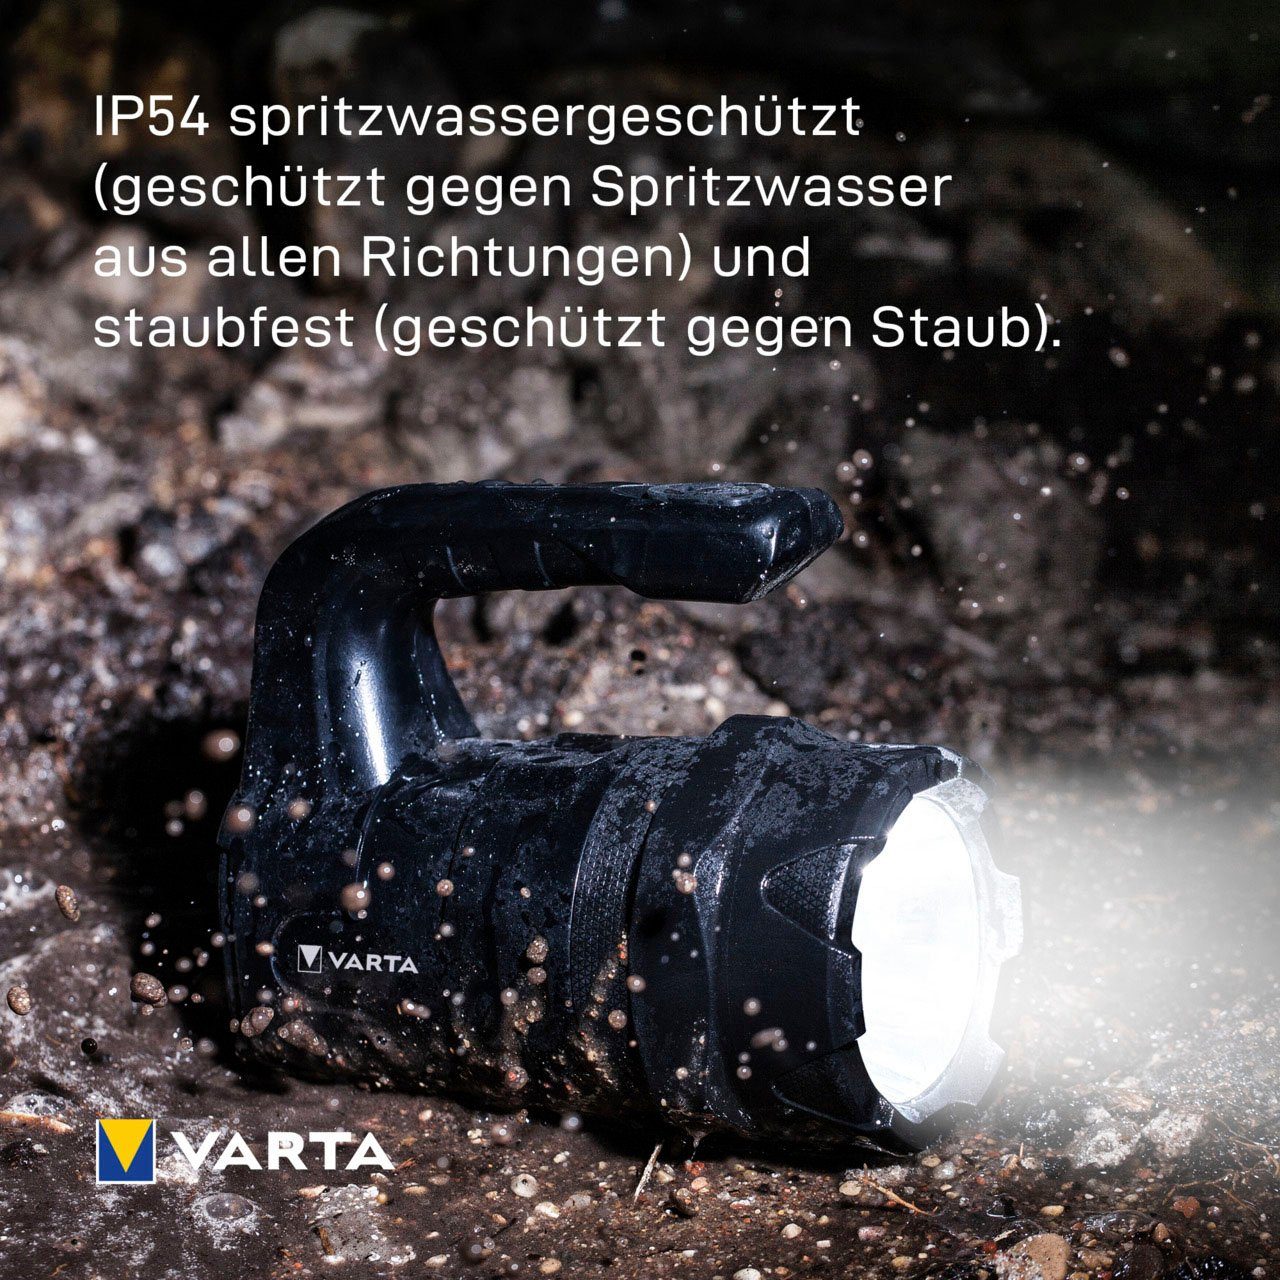 VARTA Taschenlampe Indestructible staubdicht, 6 Pro LED stoßabsorbierend, eloxiertes (7-St), und Watt Gehäuse wasser- Aluminium BL20